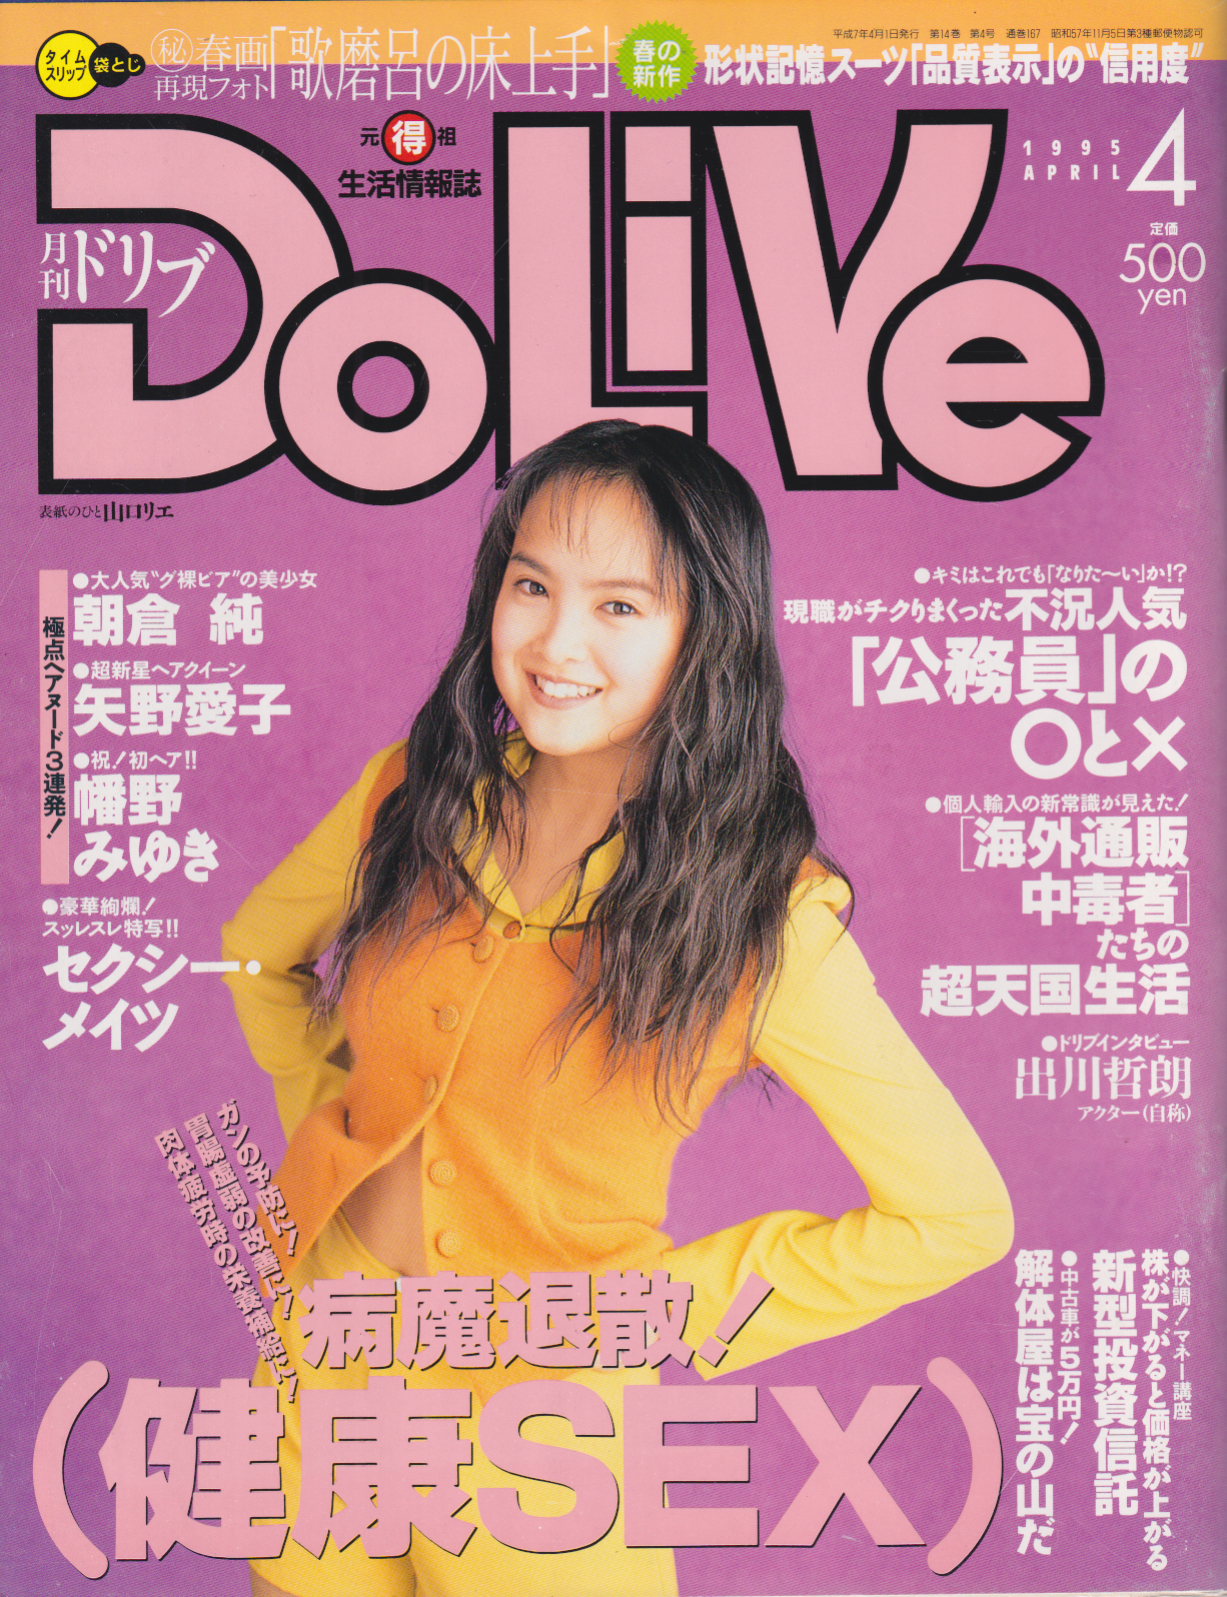  ドリブ/DOLIVE 1995年4月号 雑誌